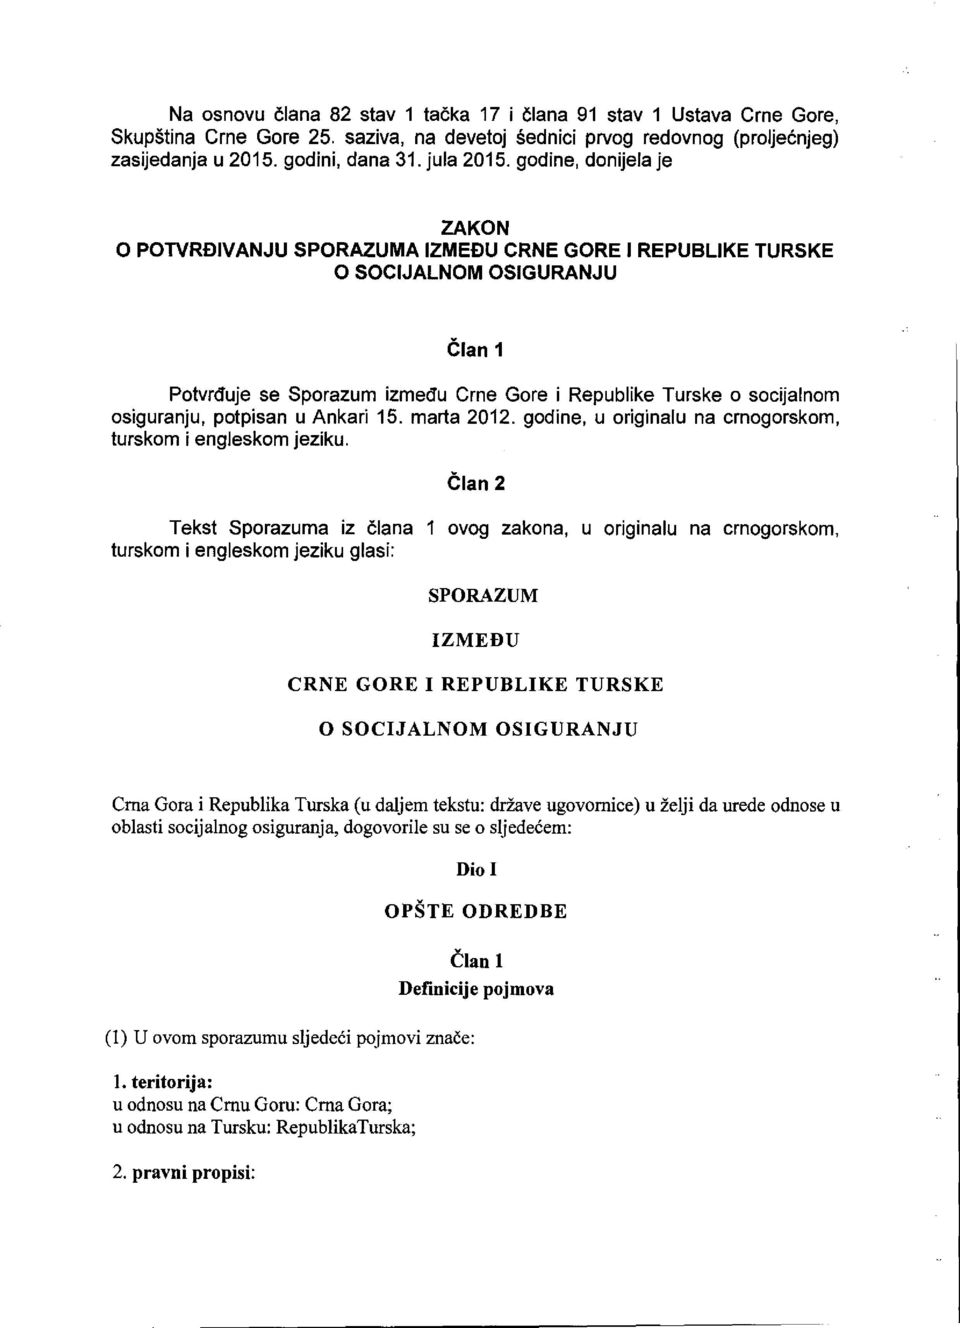 osiguranju, potpisan u Ankari 15. marta 2012. godine, u originalu na crnogorskom, turskom i engleskom jeziku.